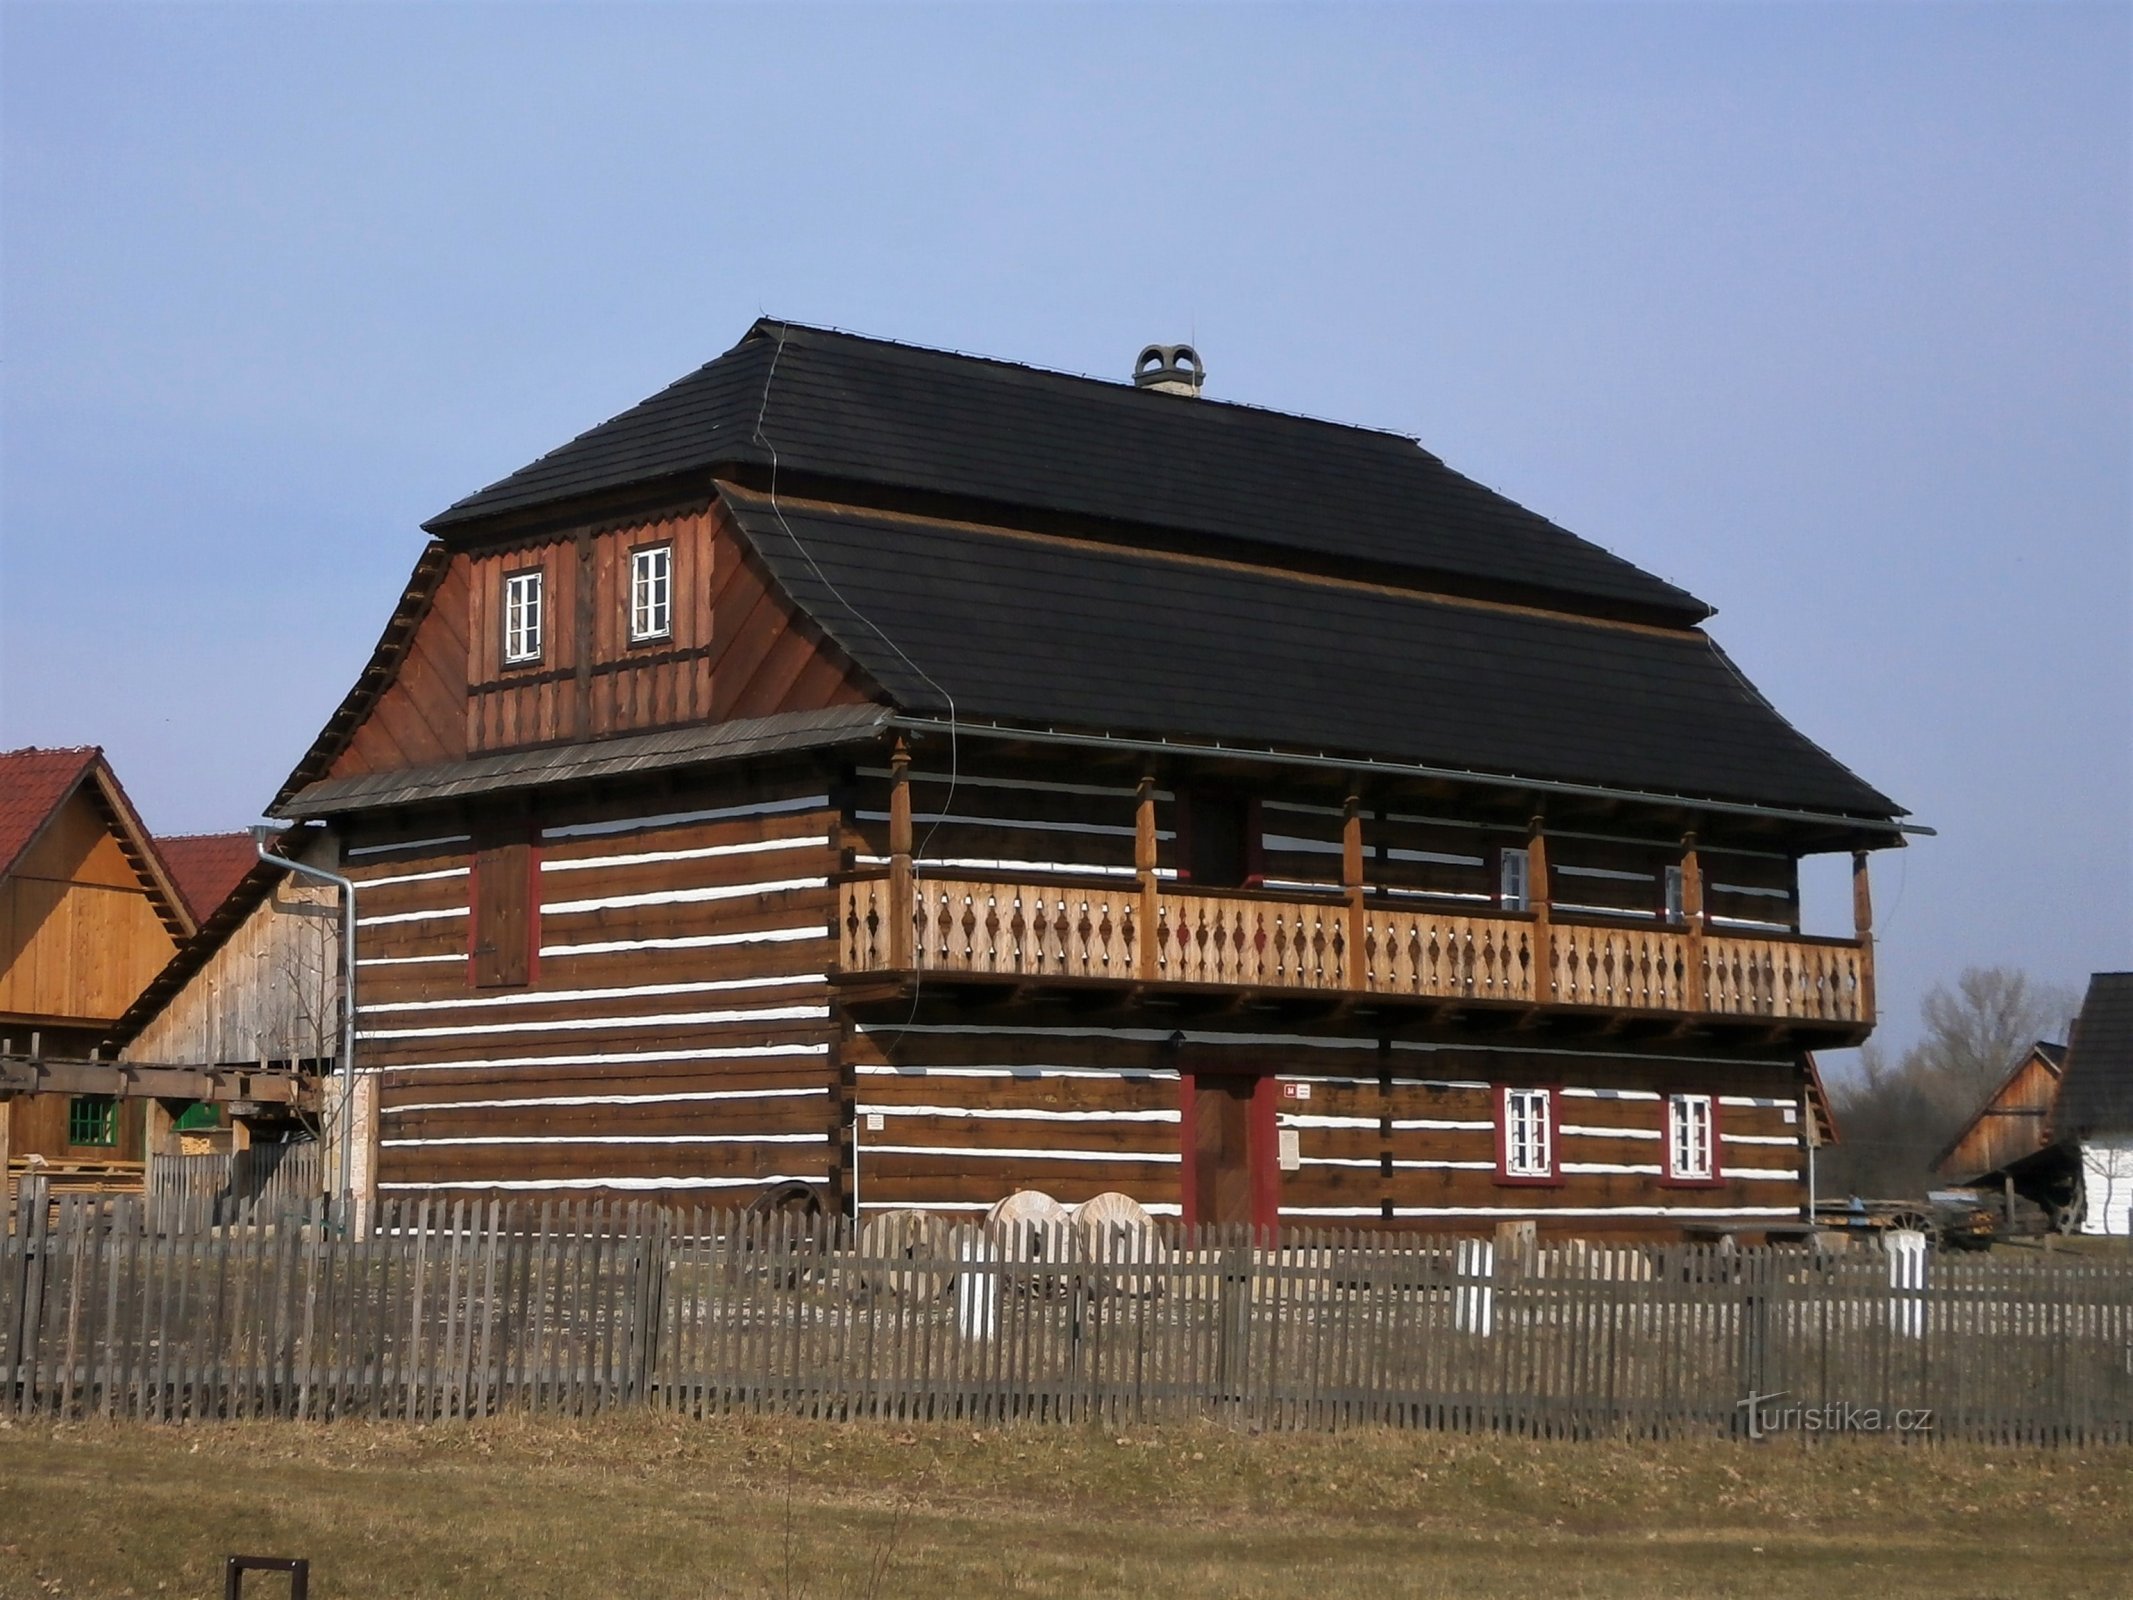 Replica van de Béleč-molen in het openluchtmuseum Krňovick (13.3.2017 mei XNUMX)